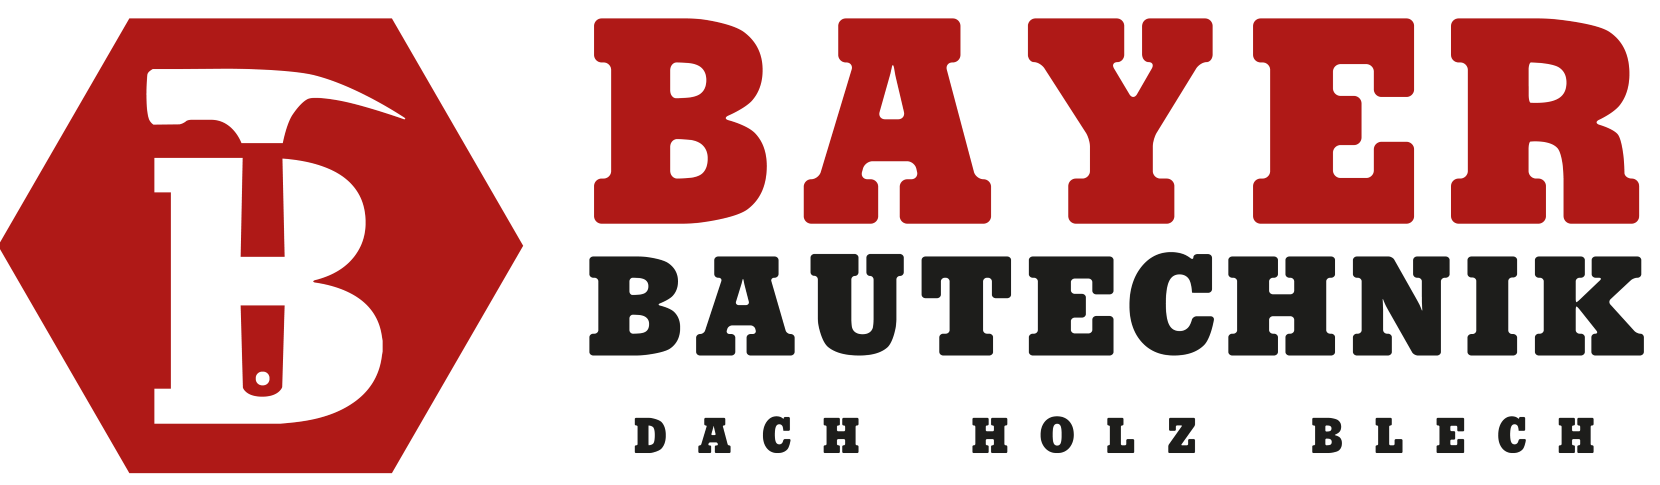 Bayer Bautechnik